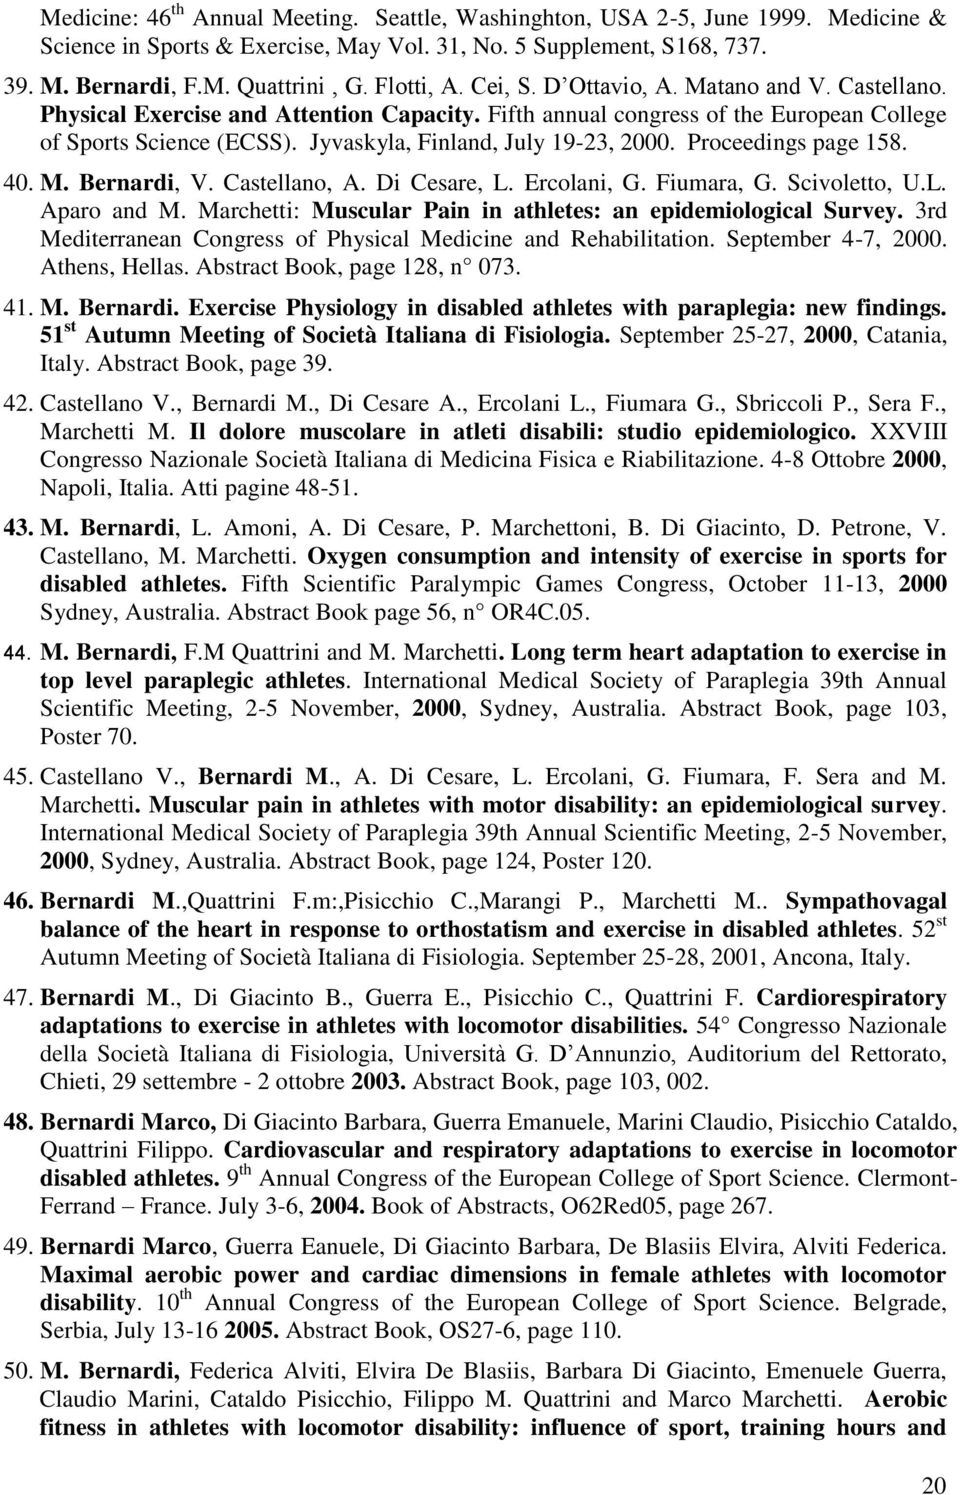 Jyvaskyla, Finland, July 19-23, 2000. Proceedings page 158. 40. M. Bernardi, V. Castellano, A. Di Cesare, L. Ercolani, G. Fiumara, G. Scivoletto, U.L. Aparo and M.